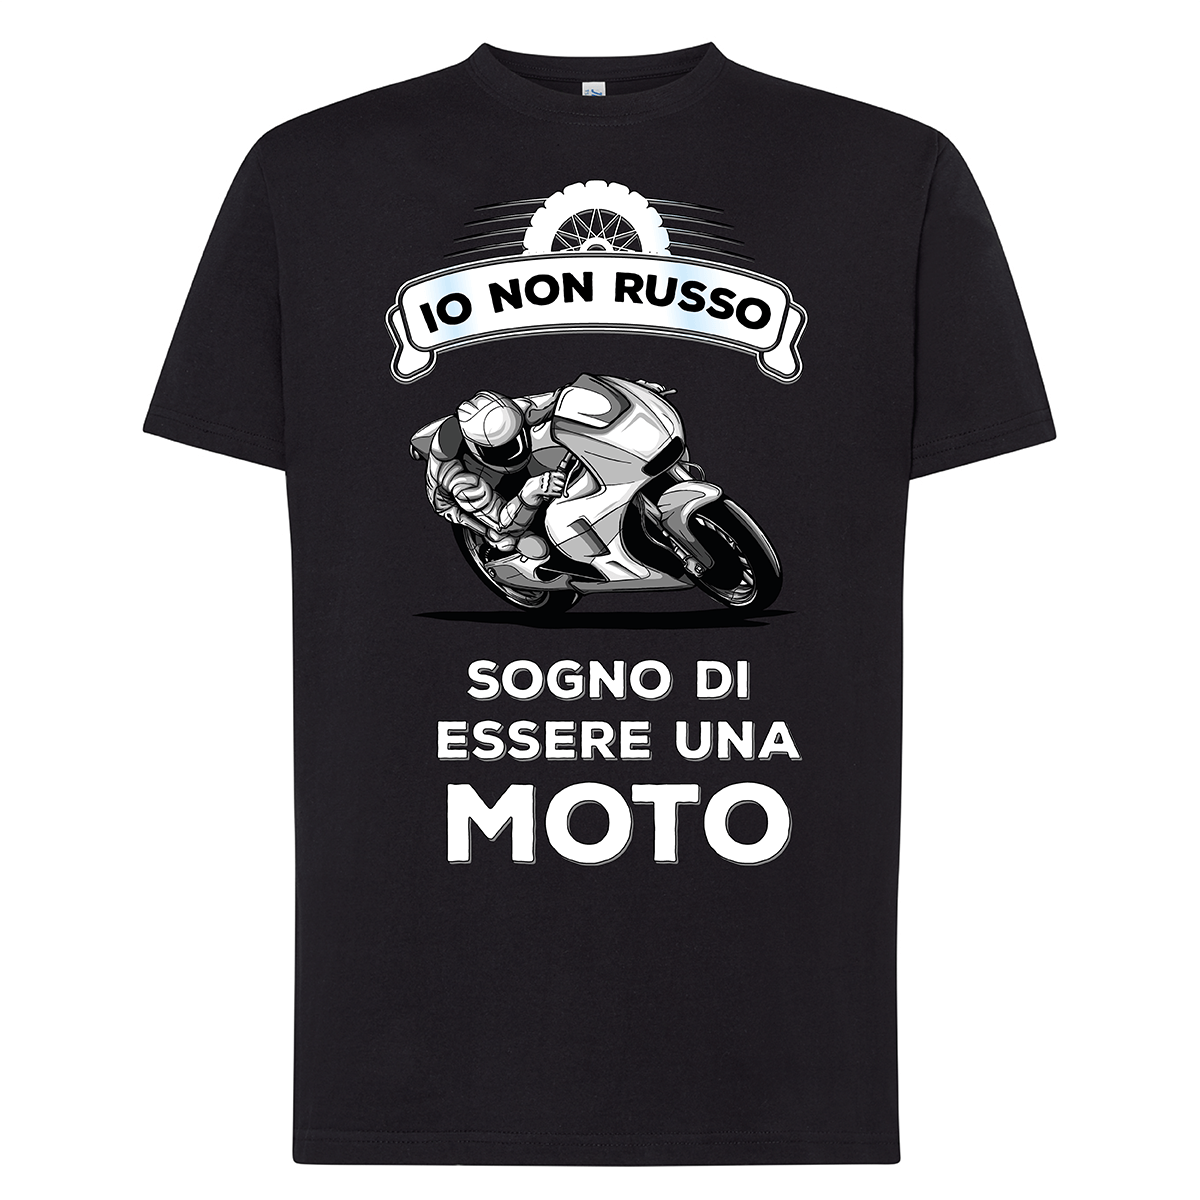 Lol T-Shirt T-shirt S / Nero Io non russo sogno di essere una moto